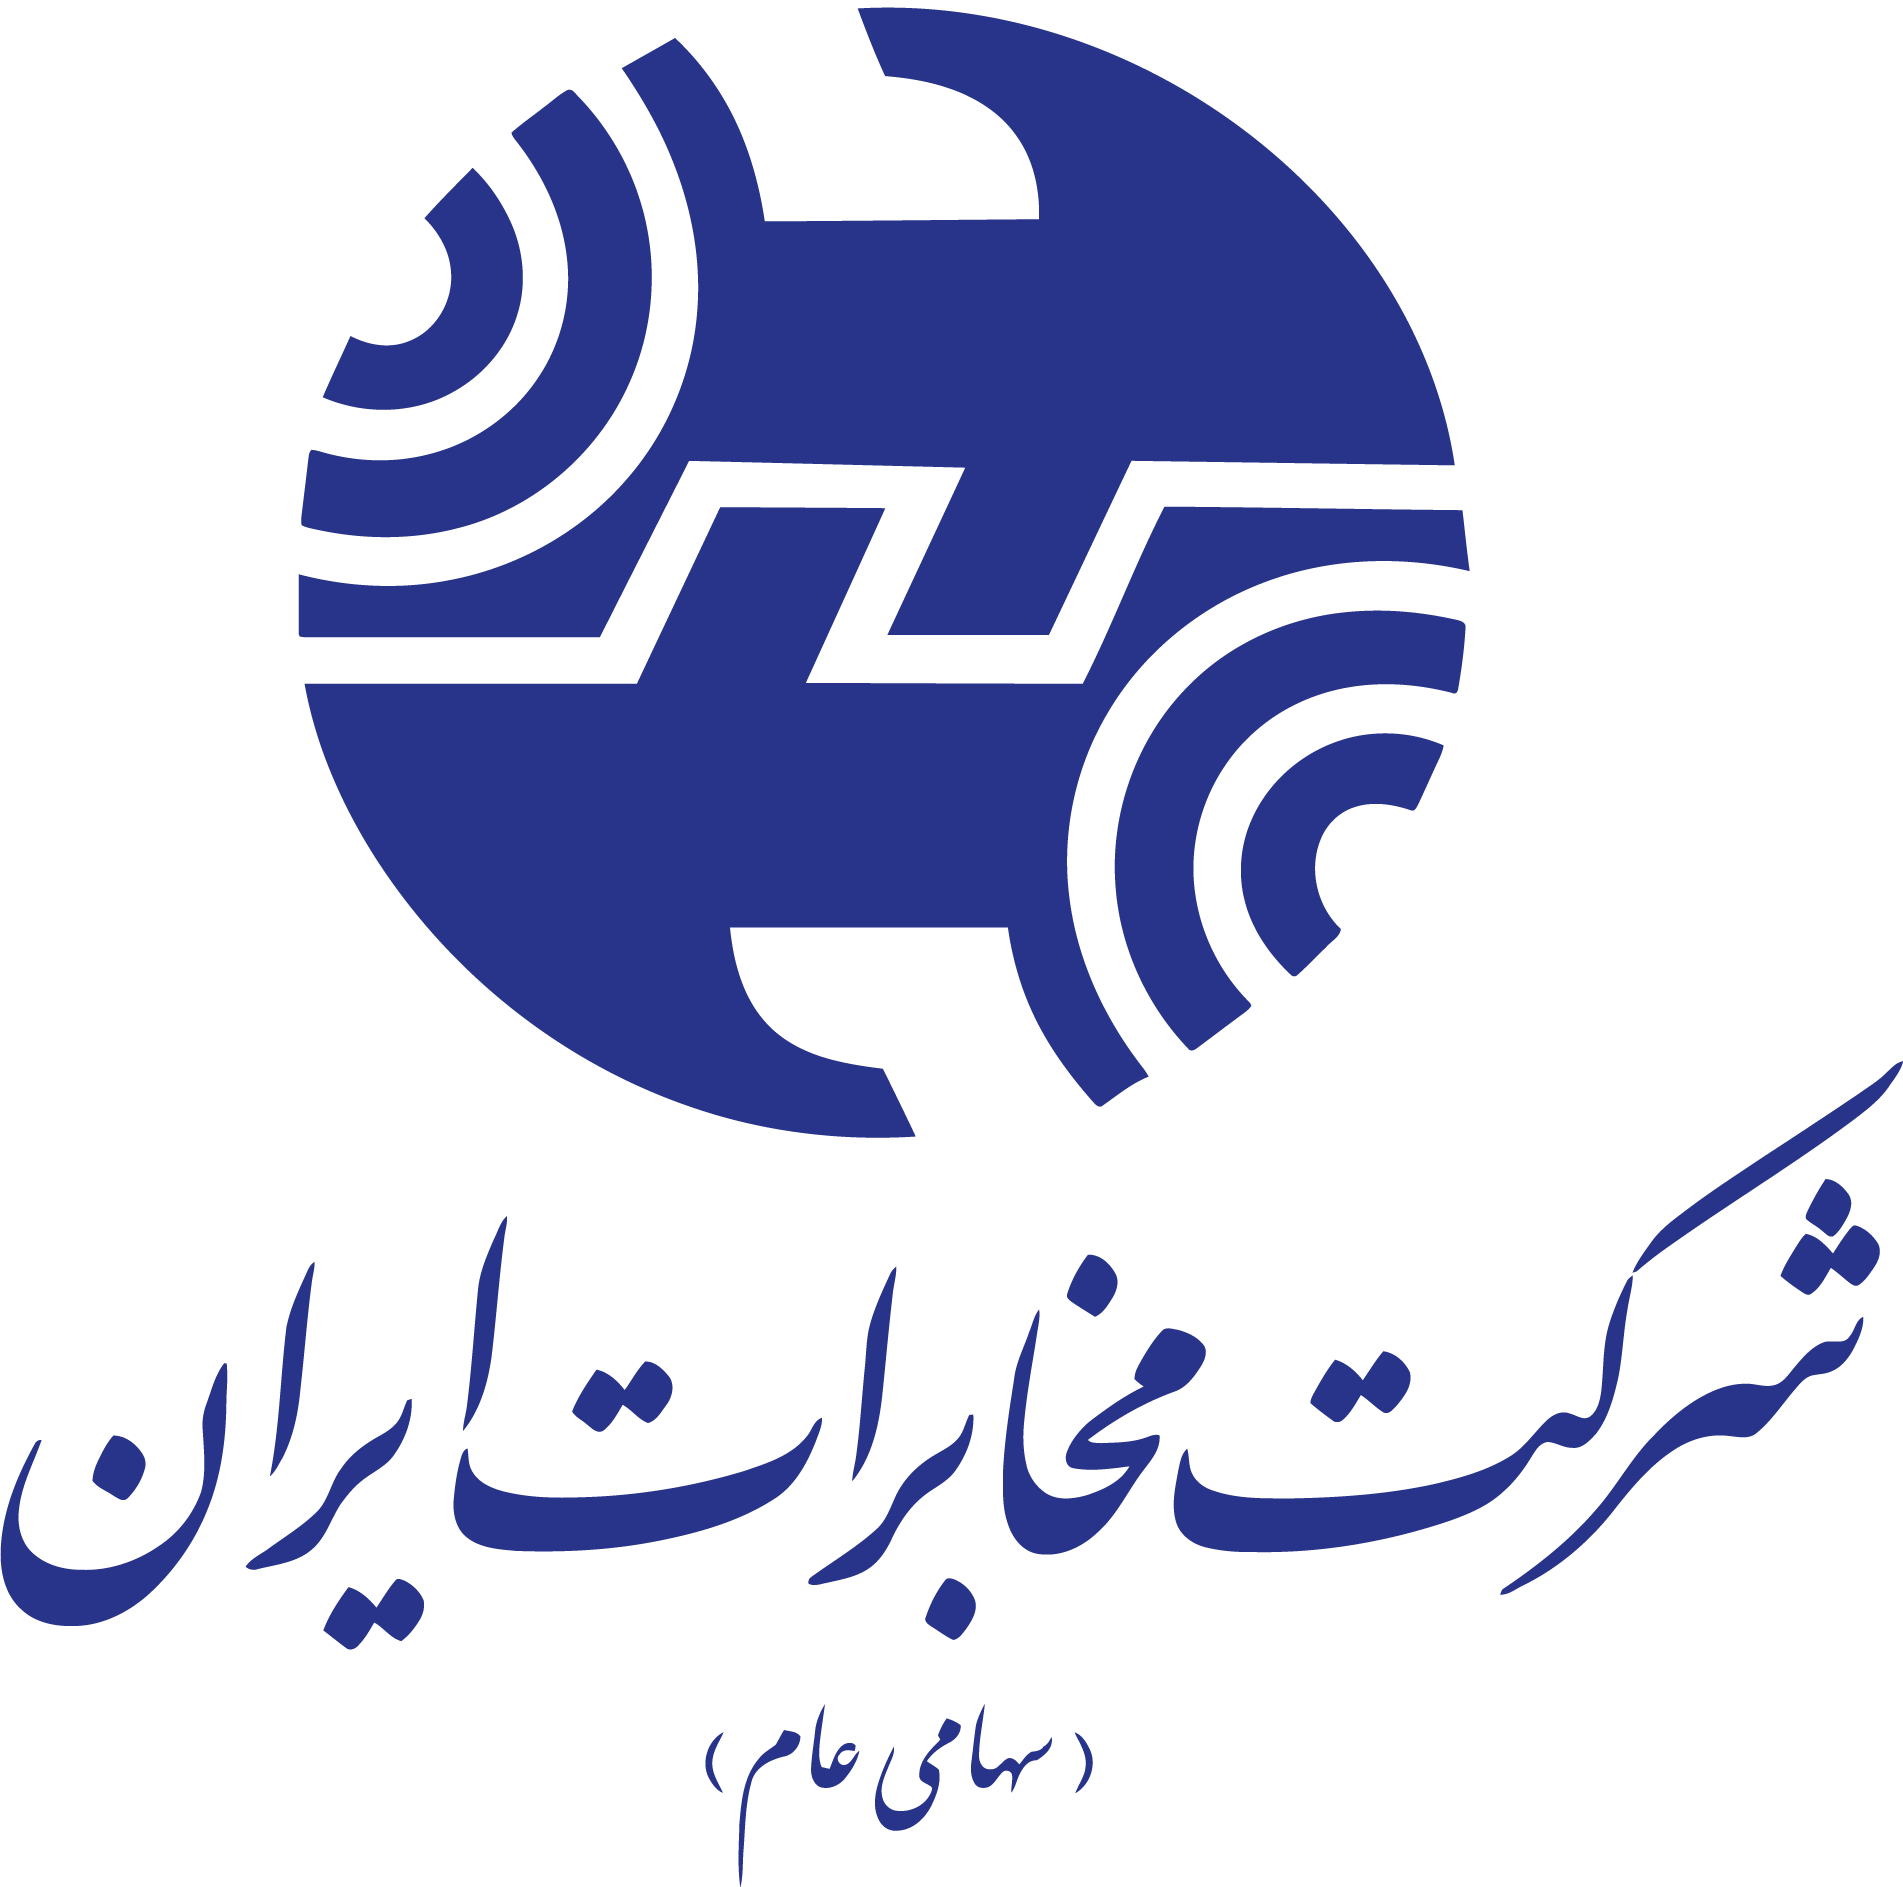 مخابرات ایران